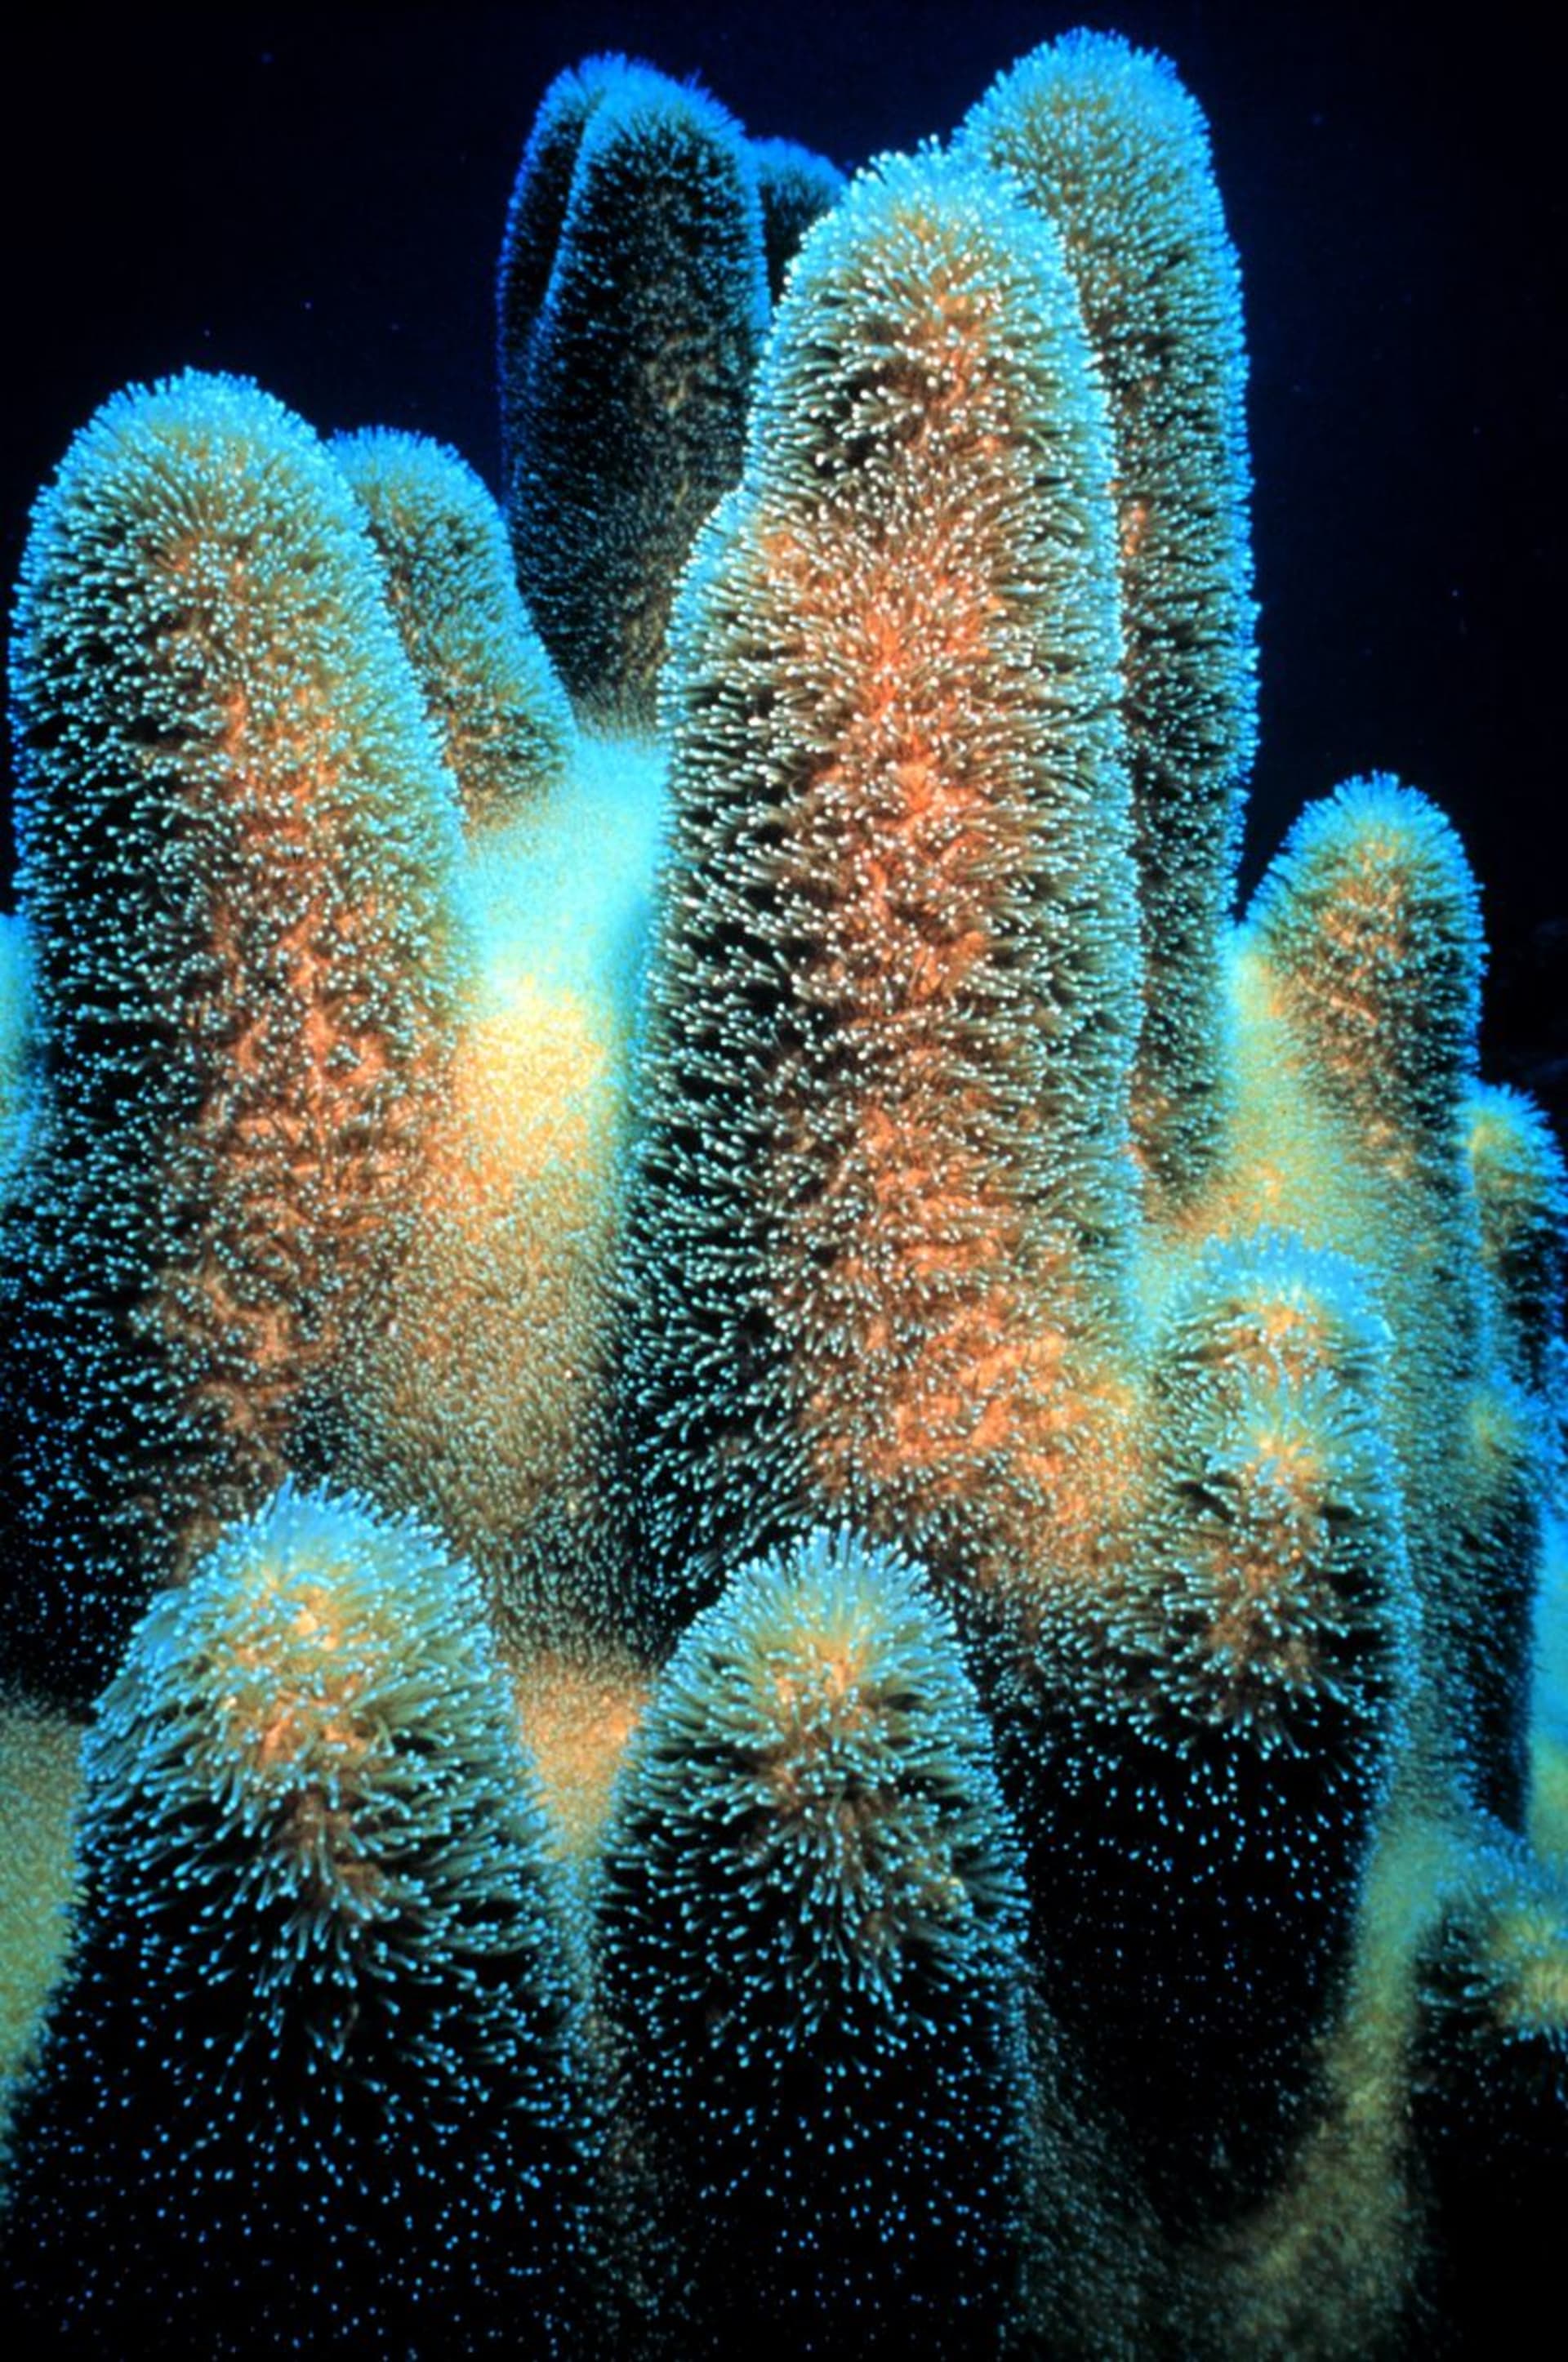 Korál druhu  Dendrogyra cylindricus,